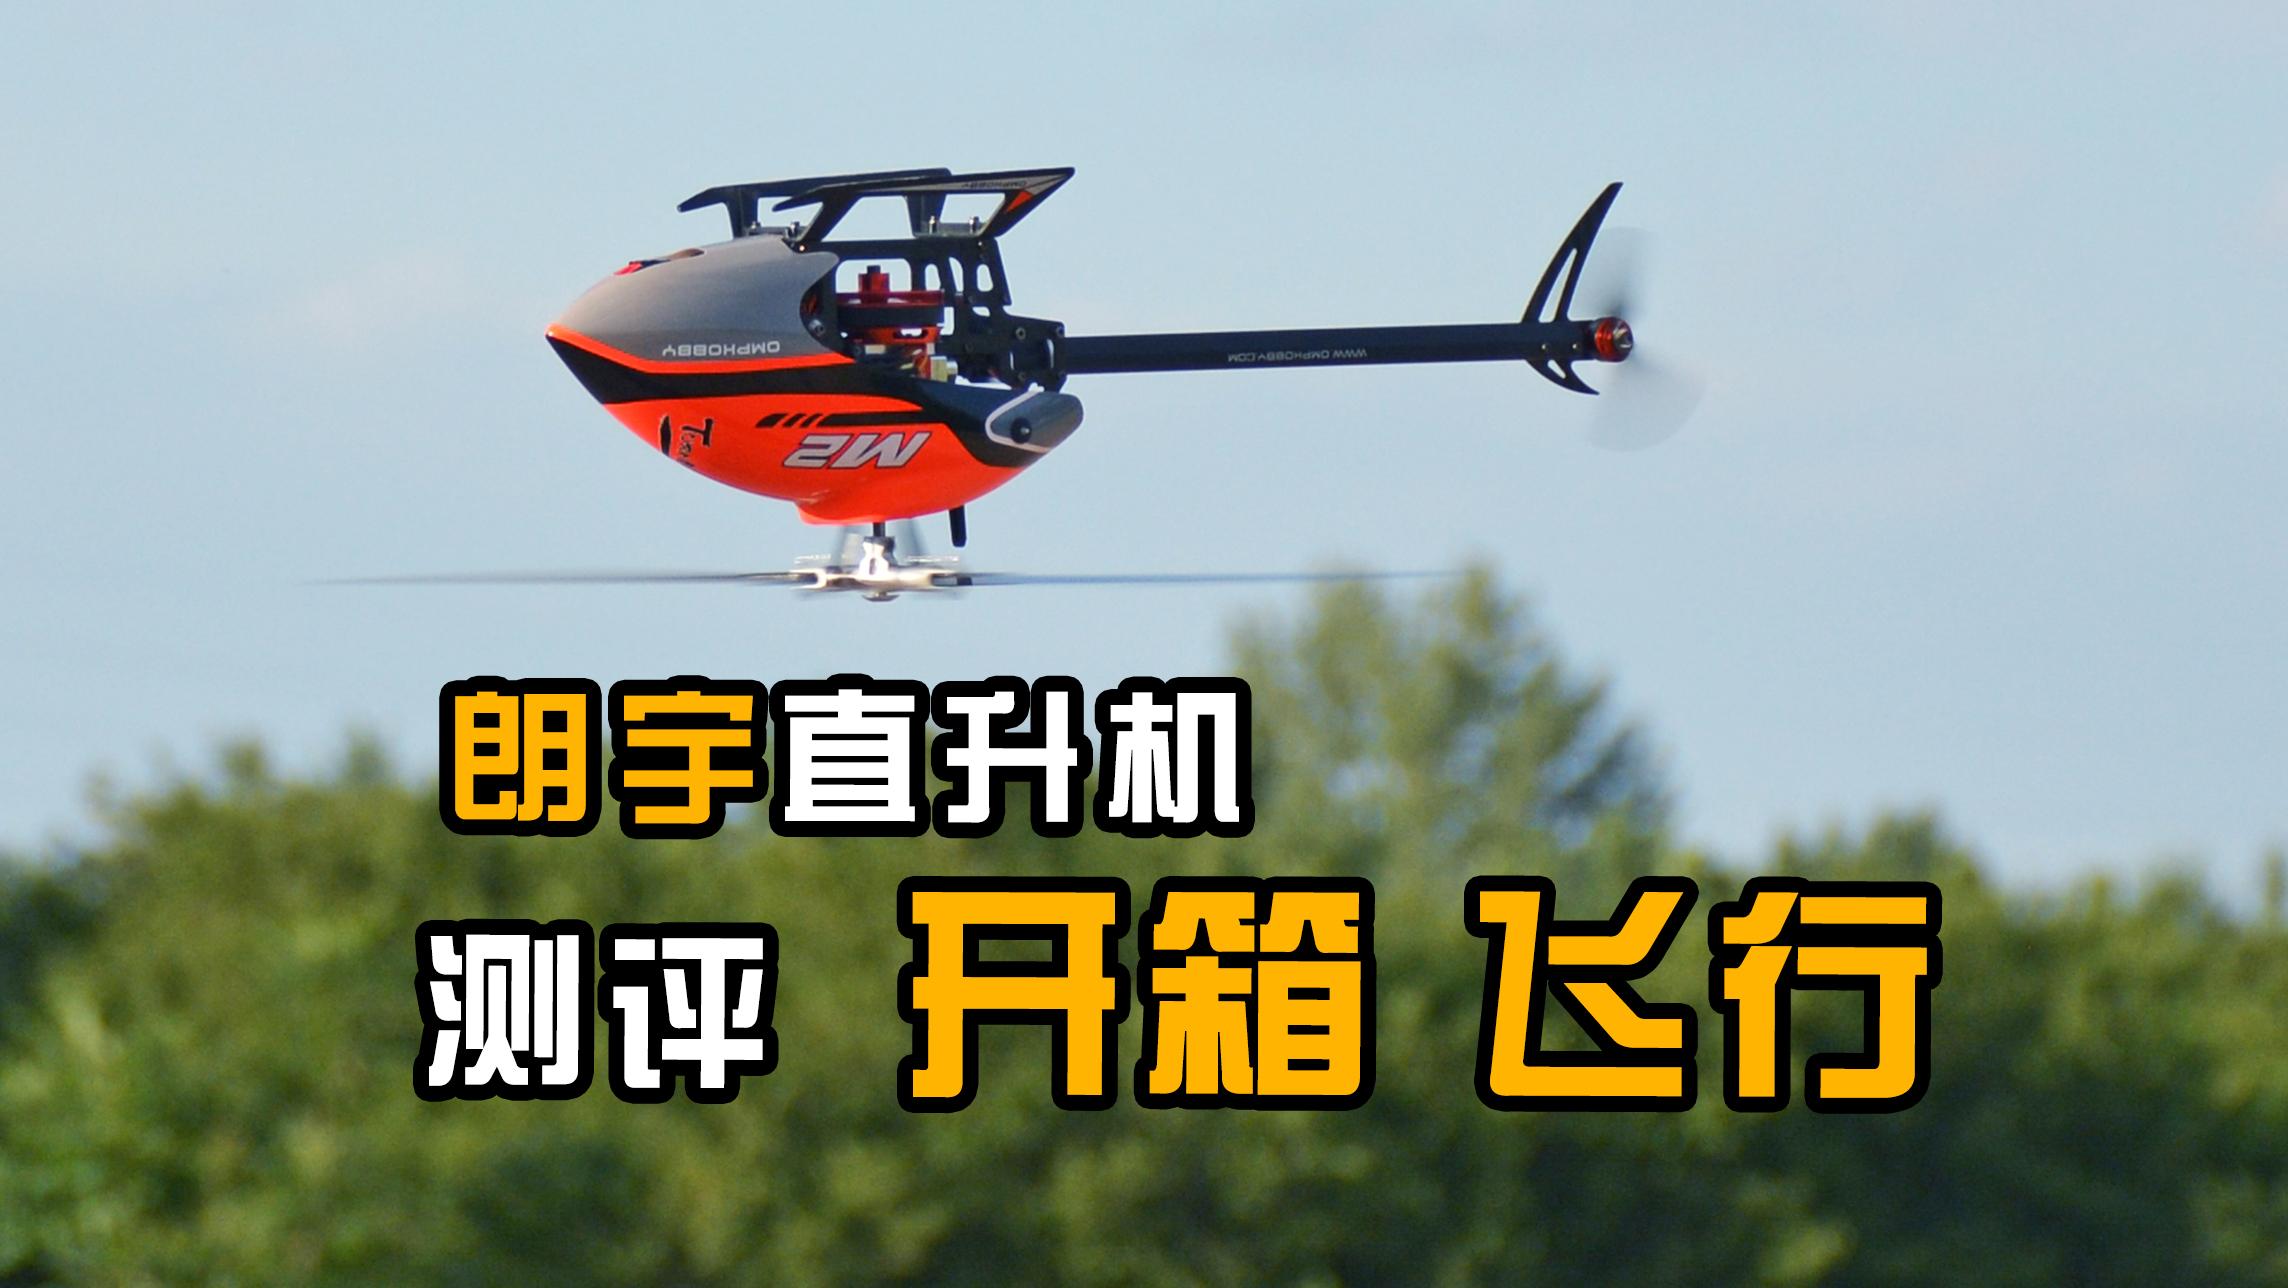 【航模测评】高端直升机新体验，朗宇OMPHOBBY M2遥控直升机开箱飞行